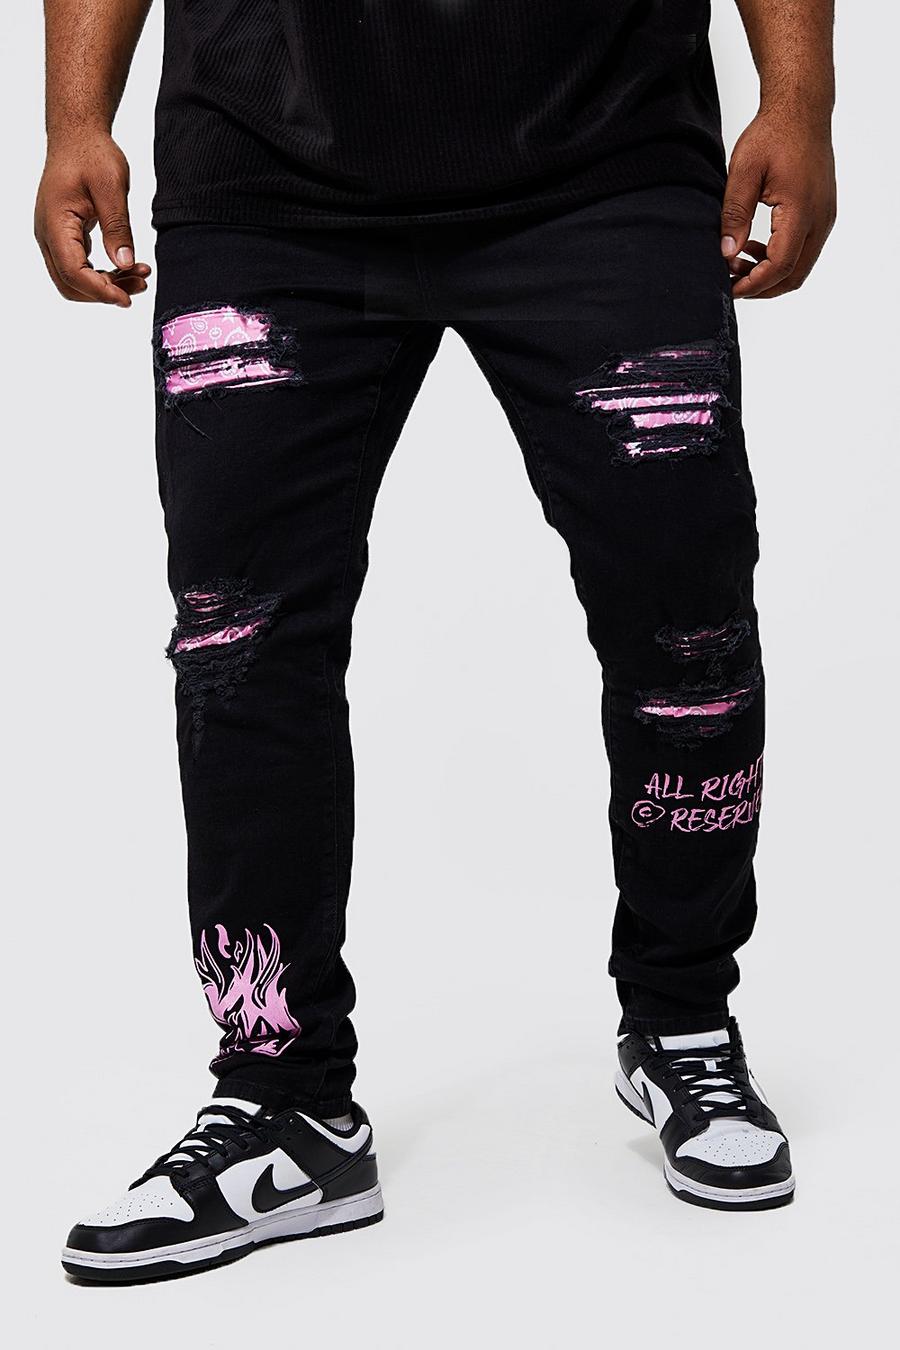 Jeans Plus Size Skinny Fit in fantasia a bandana stile Graffiti con strappi, Black negro